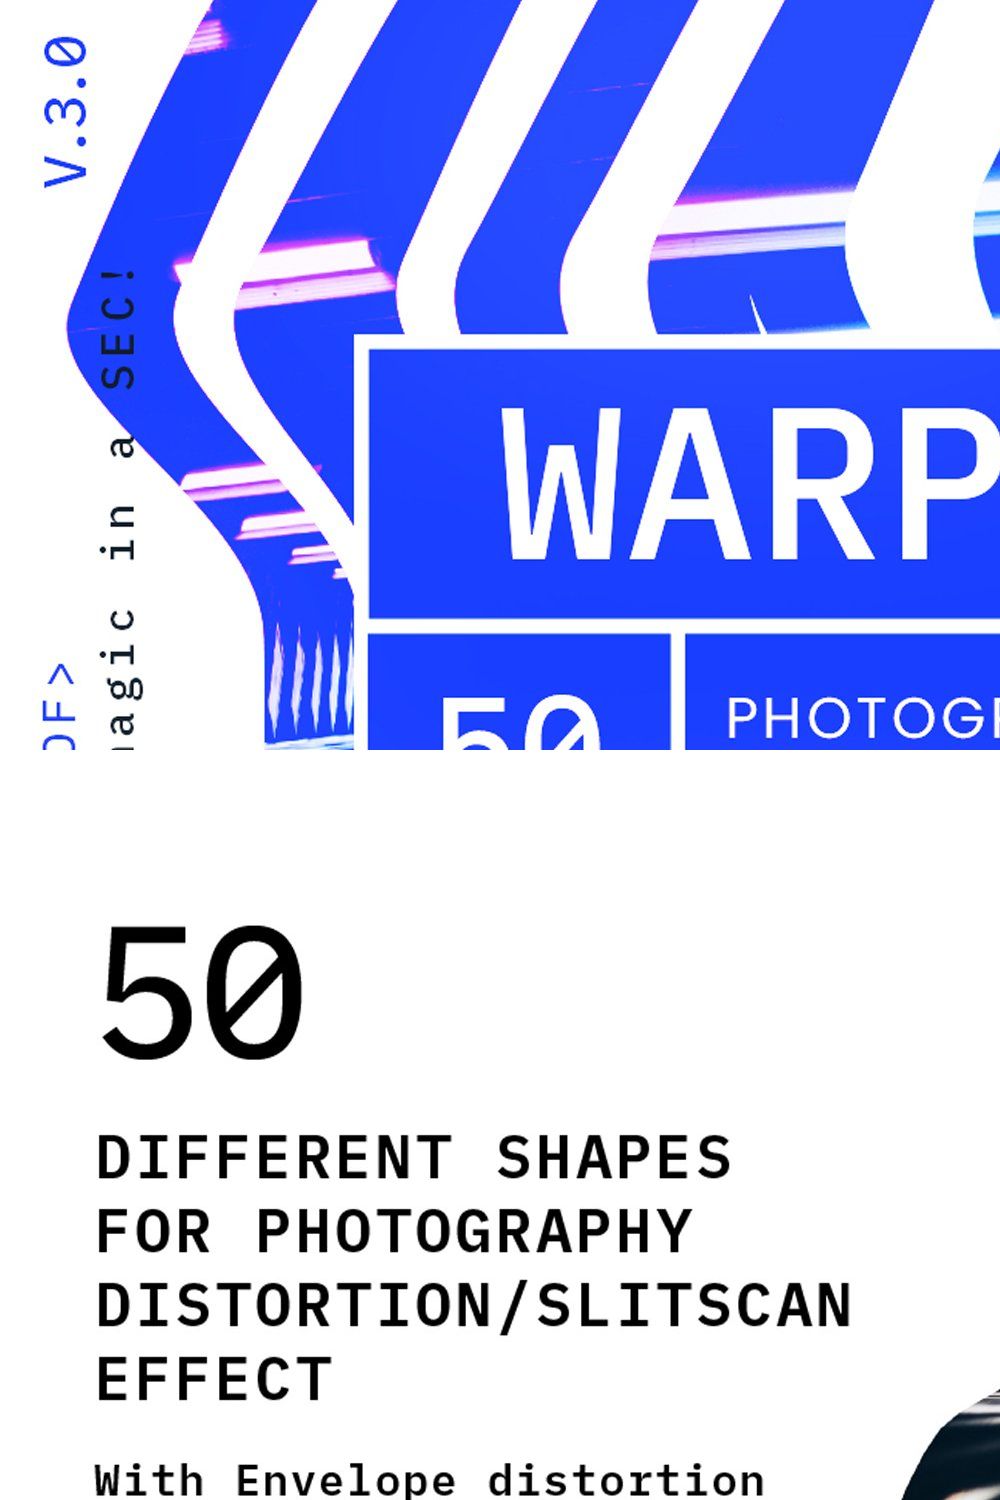 WARP V.3.0 pinterest preview image.